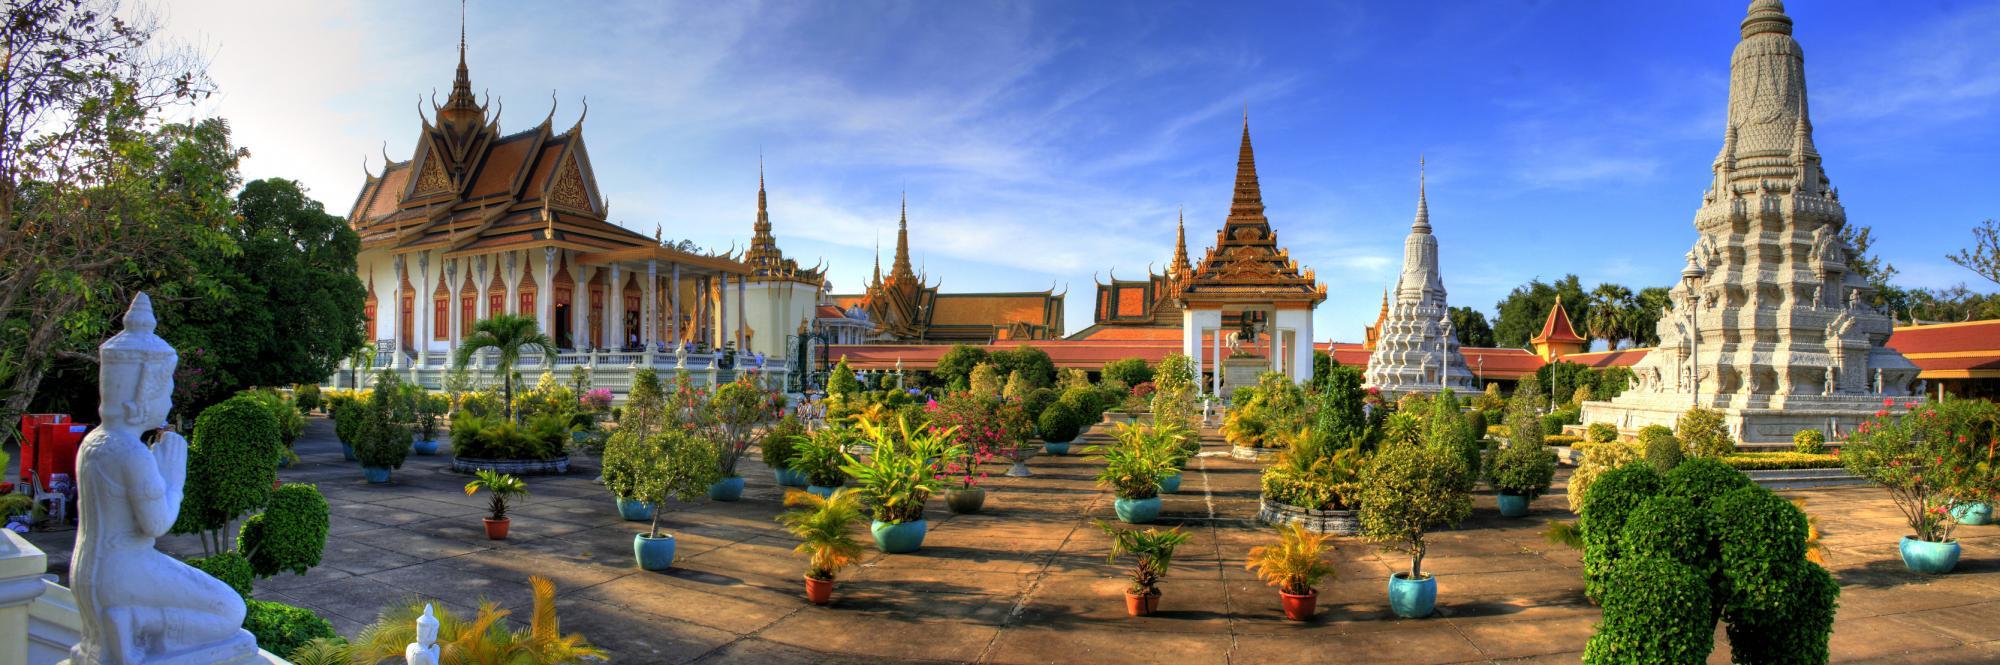 Der Innenbereich der Silberpagode von Phnom Penh, Kambodscha